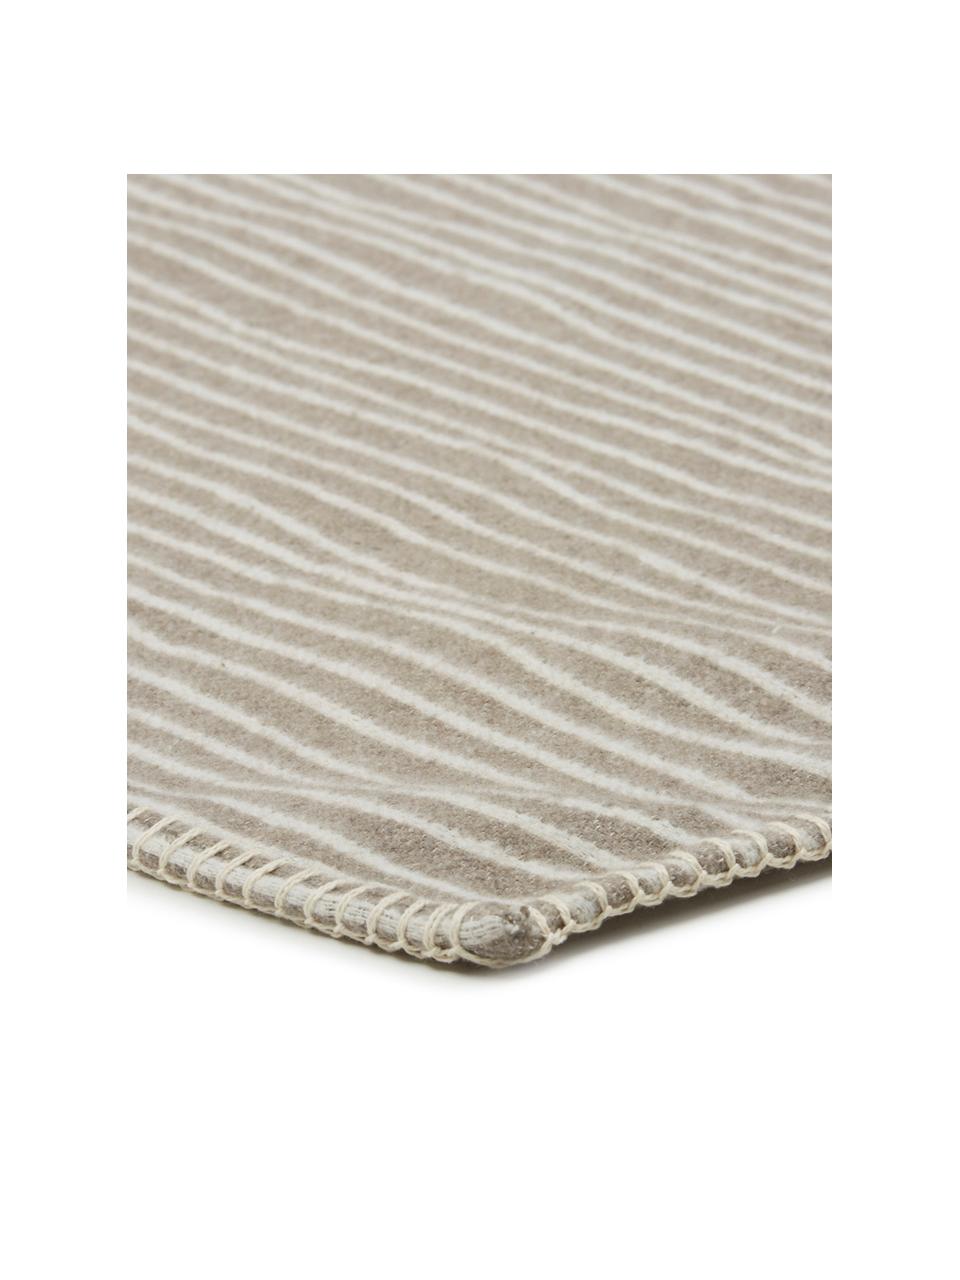 Kuscheldecke Nova Stripes im Liniendesign, 85% Baumwolle, 8% Viskose, 7% Polyacryl, Rauchgrau, Weiss, 145 x 220 cm